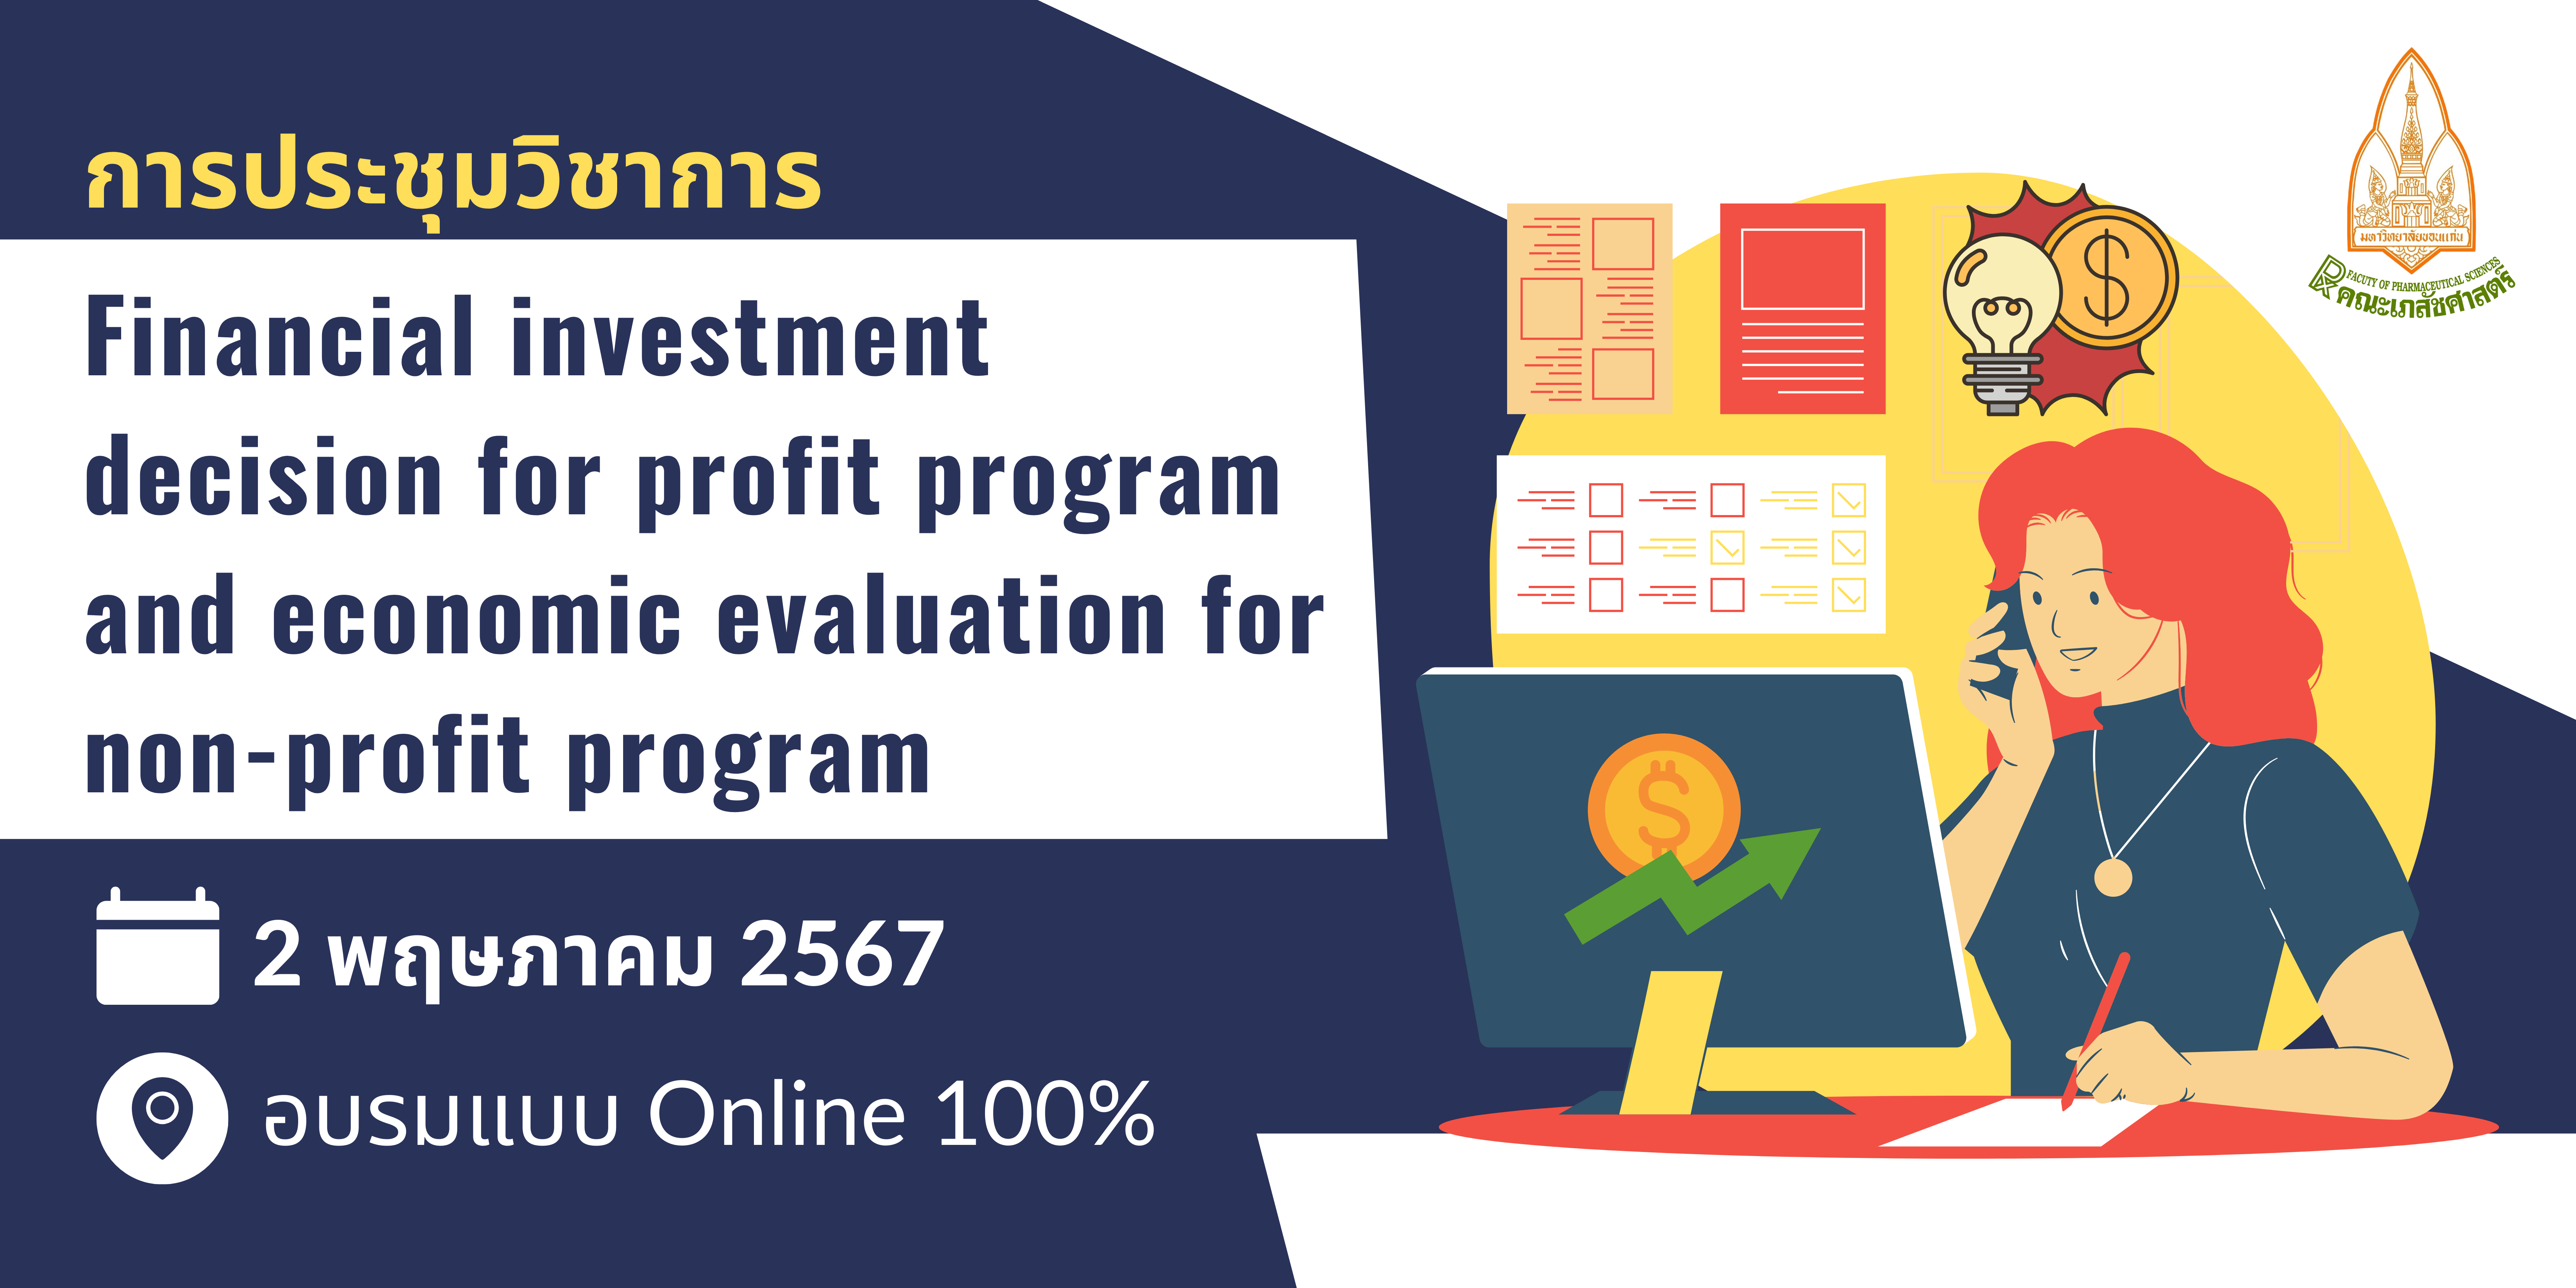 [ประชุมวิชาการ] Financial investment decision for profit program and economic evaluation for non-profit program